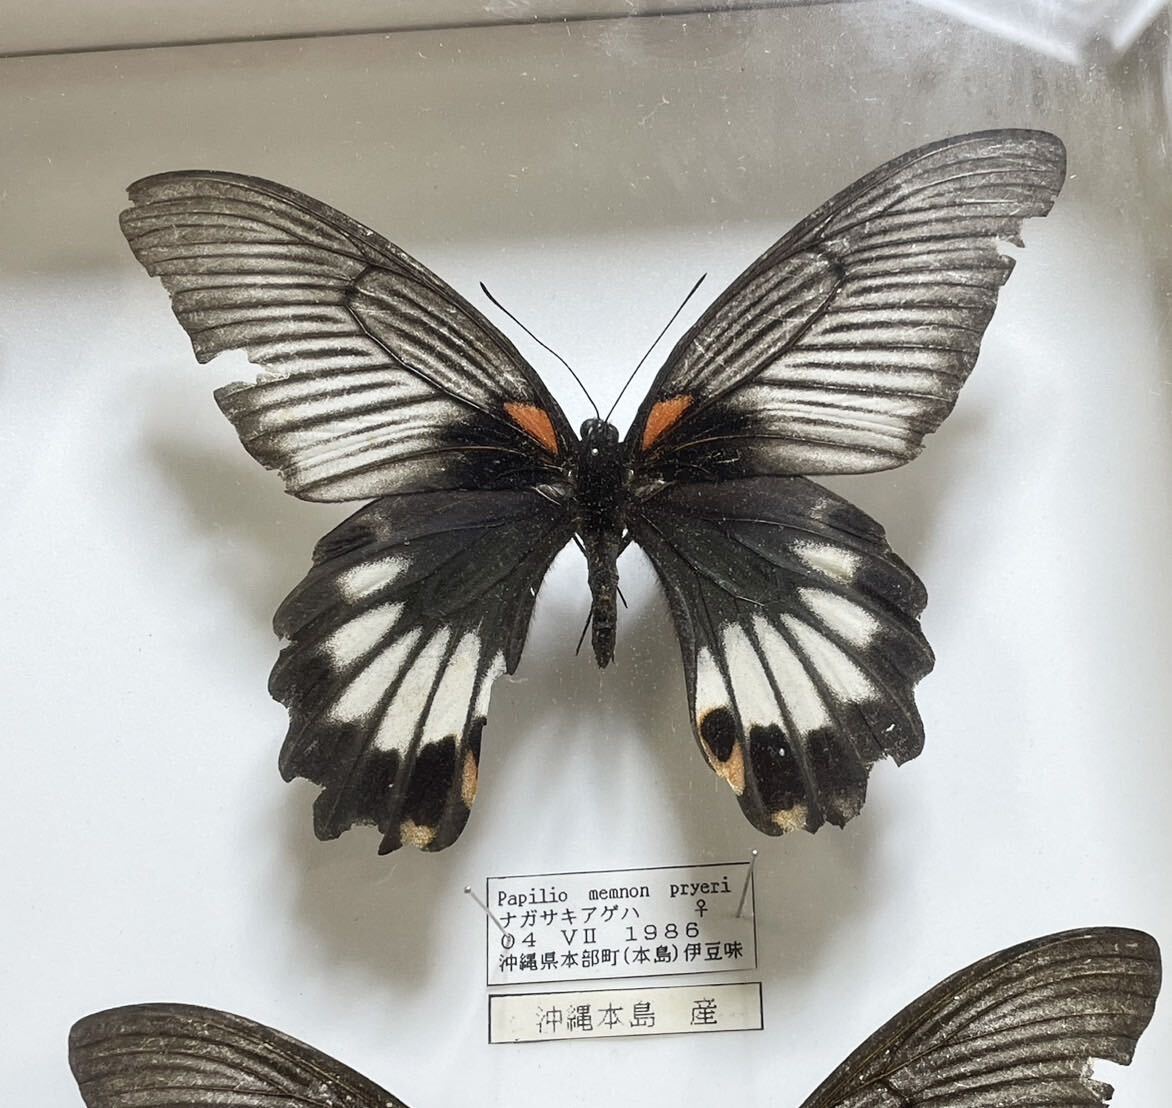  редкий! бабочка образец длина Kia ge - Германия коробка бабочка . Okinawa 1986 год подлинная вещь retro Vintage античный E9